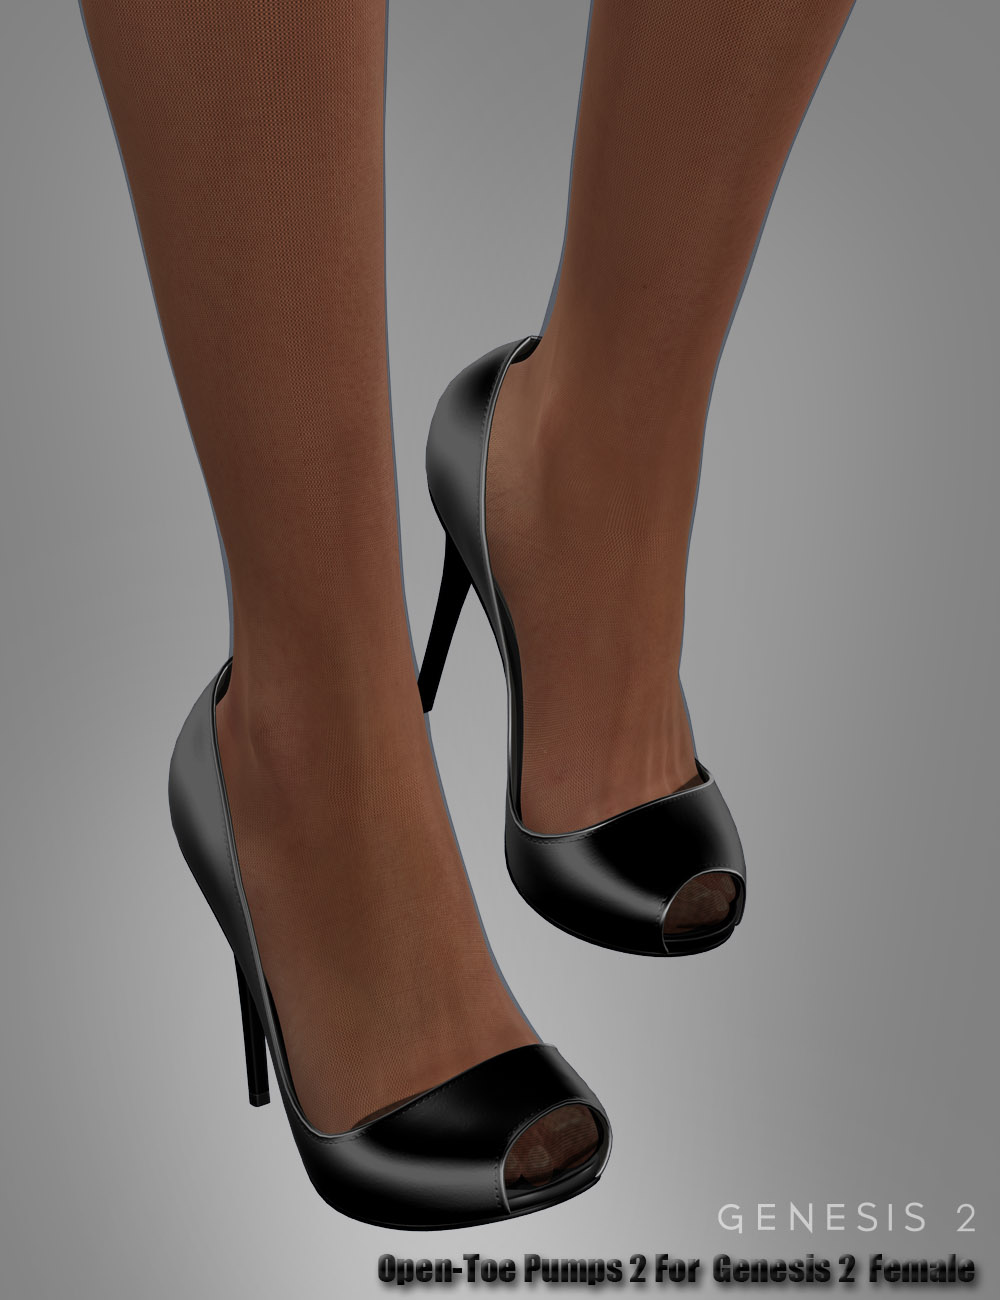 Open-Toe Pumps 2 For Genesis 2 Female(s) | Daz 3D